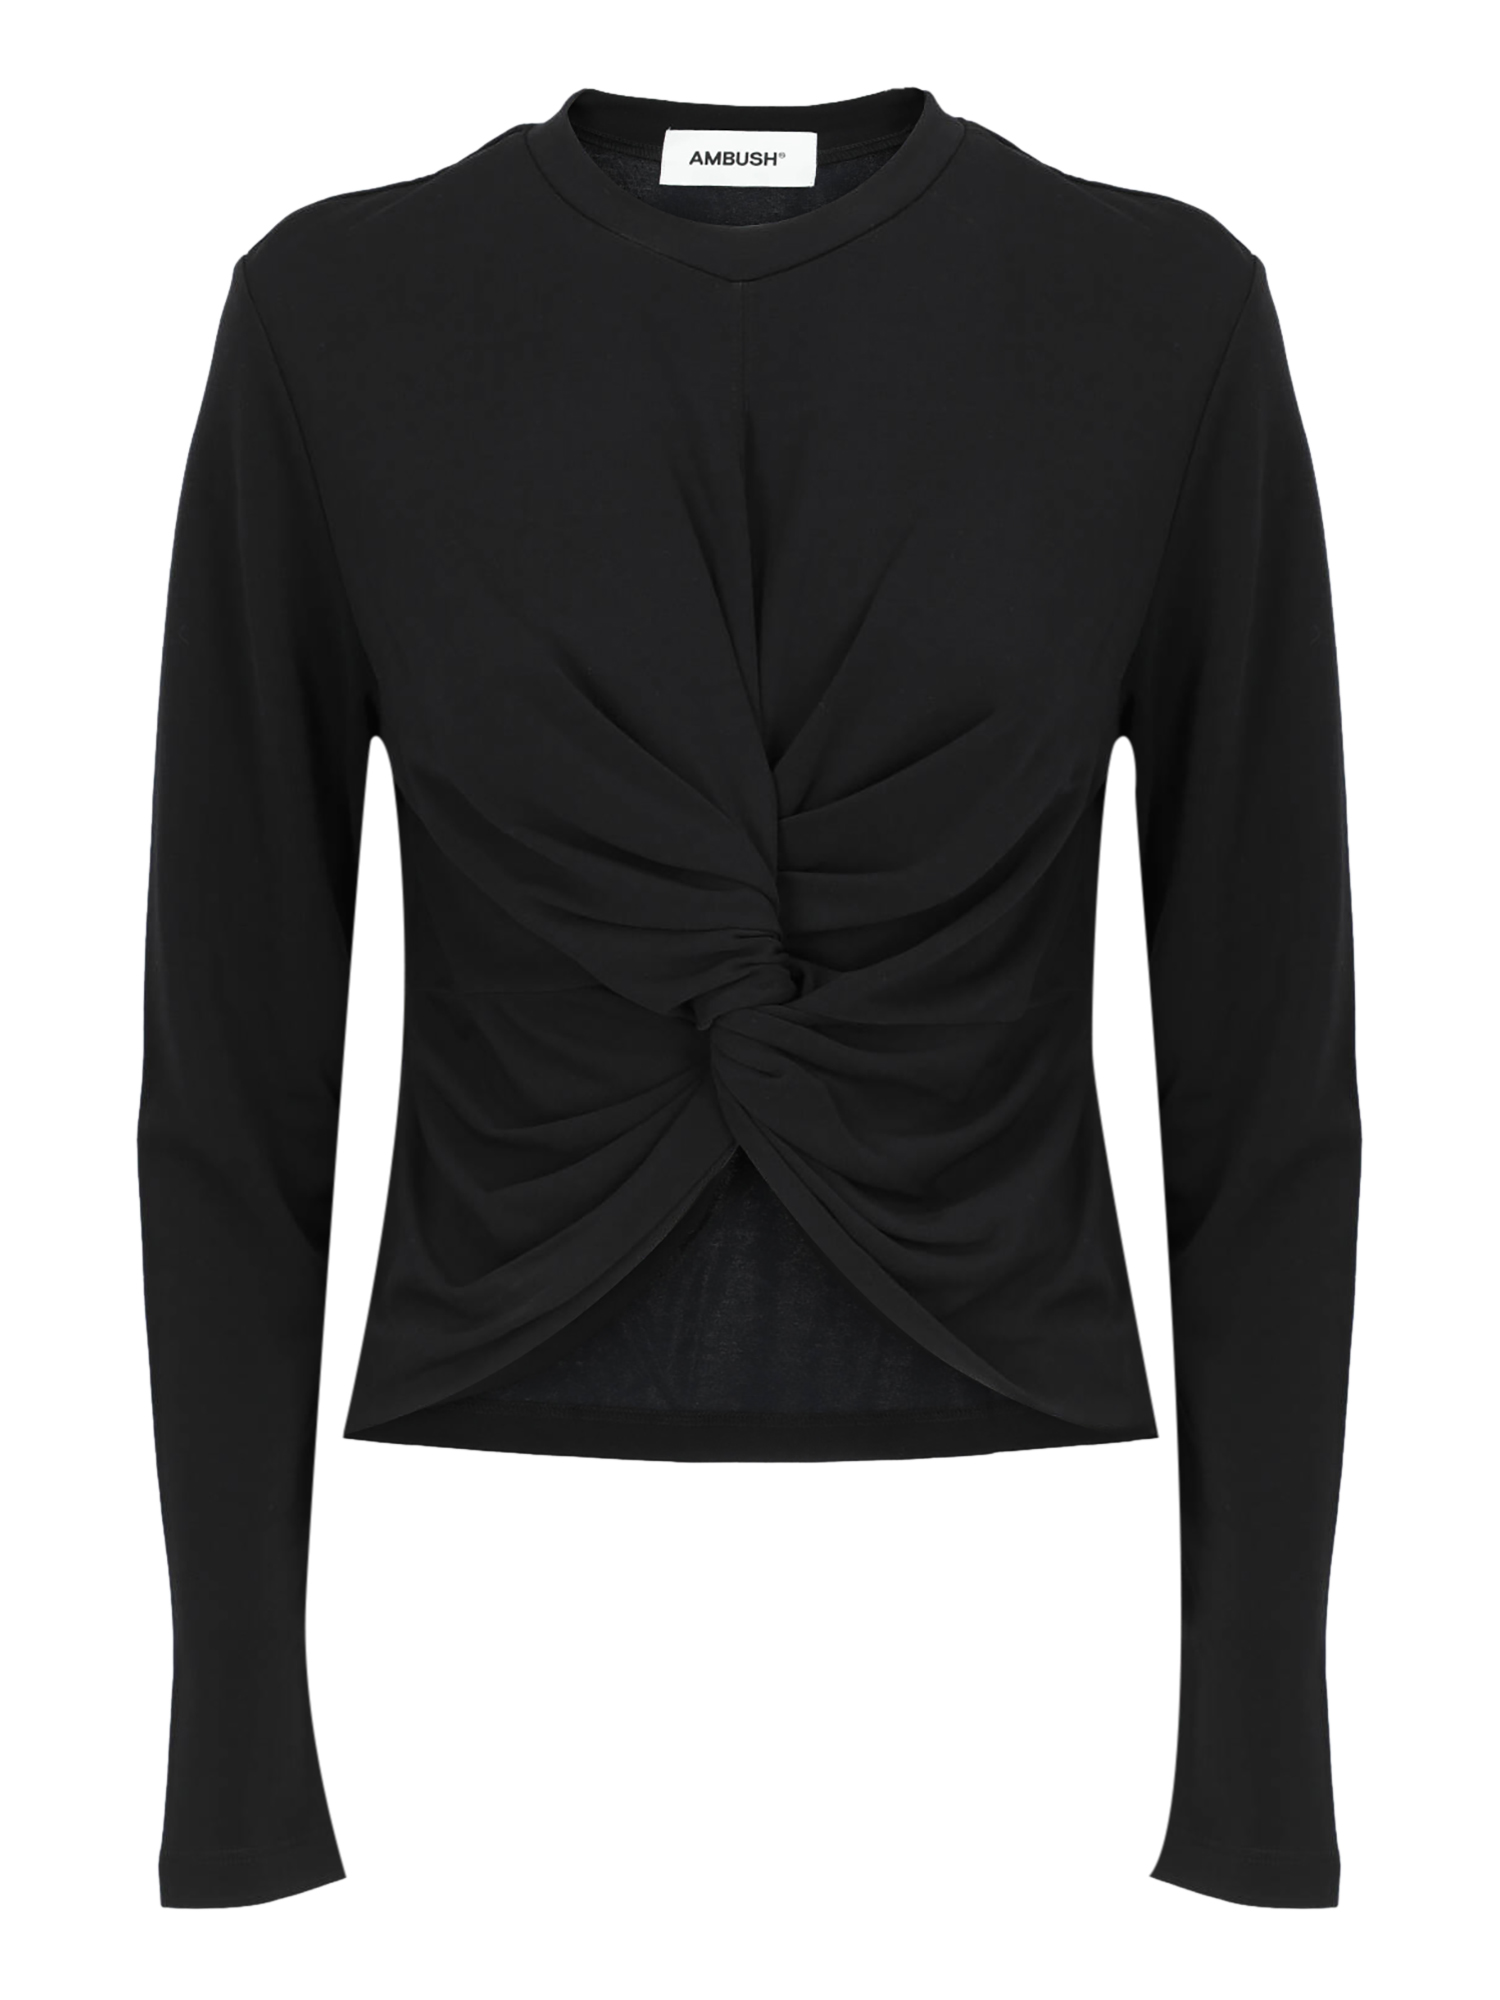 T-shirts Et Tops Pour Femme - Ambush - En Synthetic Fibers Black - Taille:  -